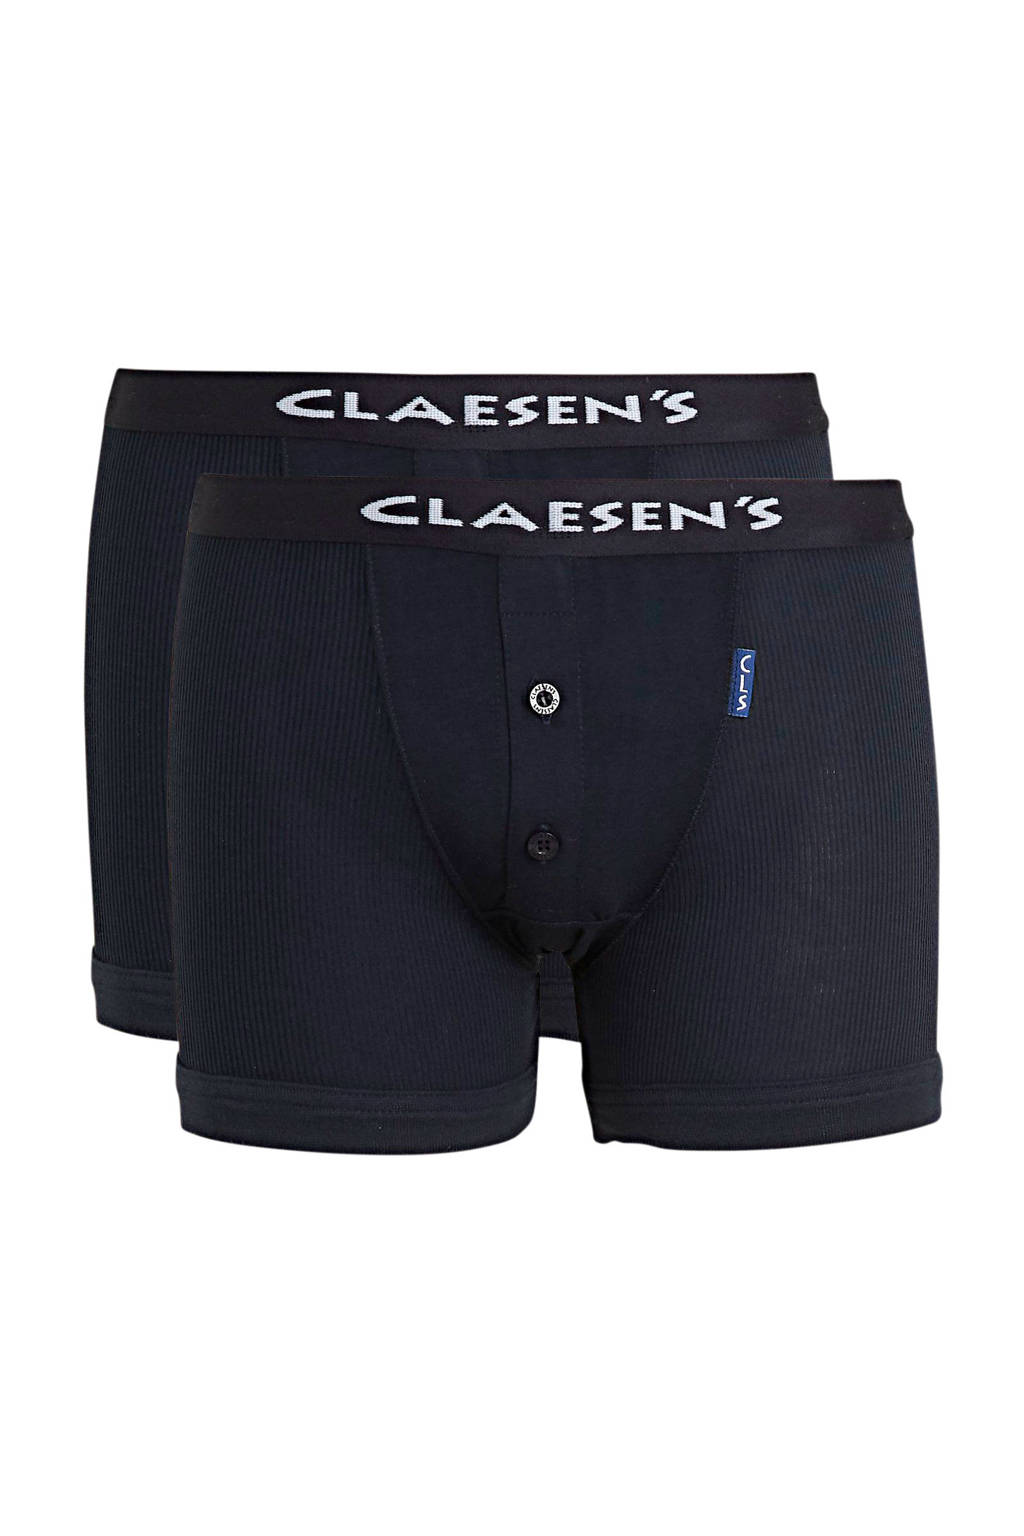 Claesen's   boxershort - set van 2 donkerblauw, Donkerblauw